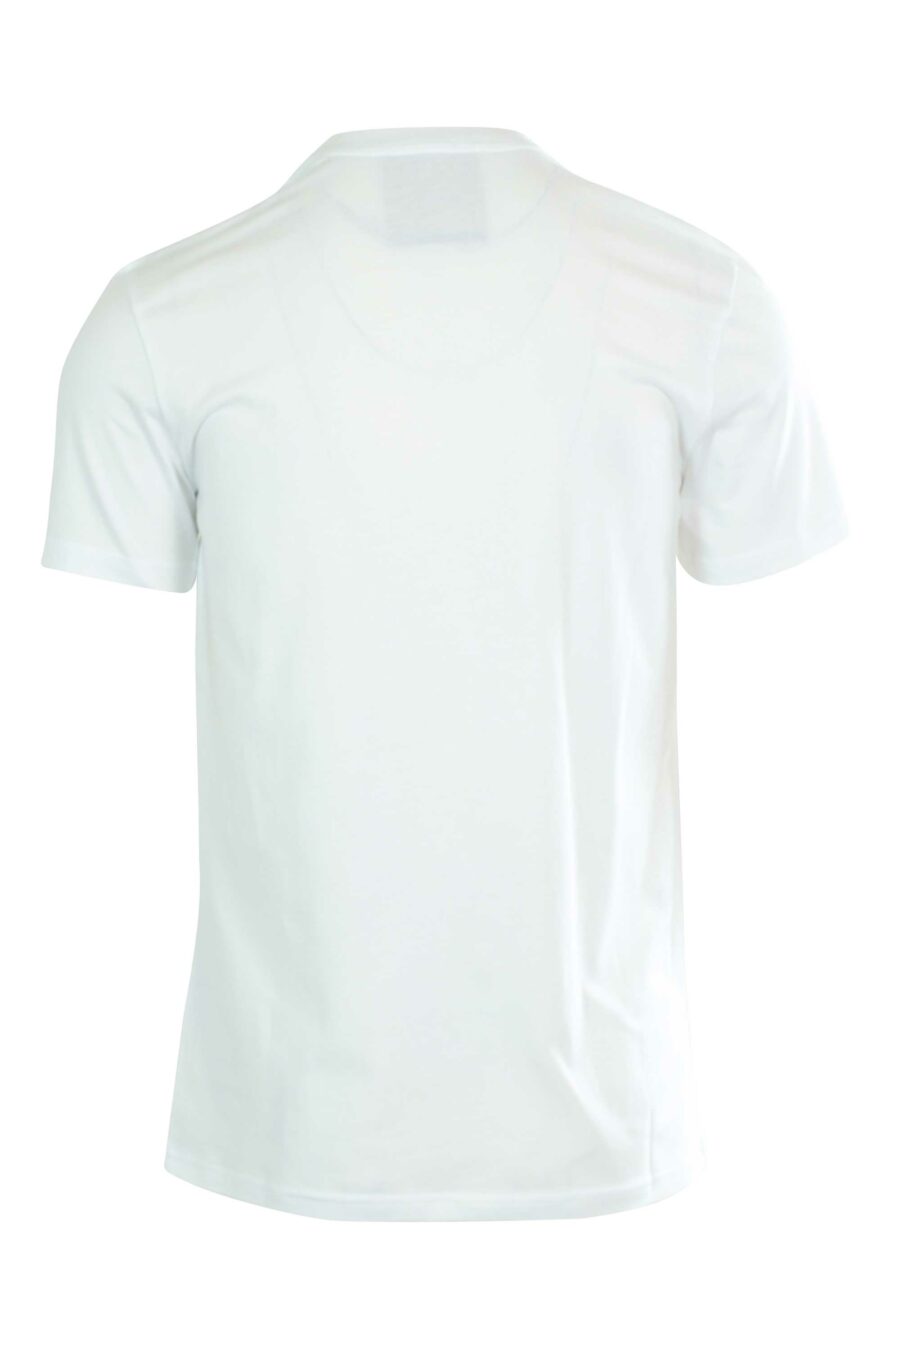 Camiseta blanca con maxilogo doble pregunta negro - 667112832266 2